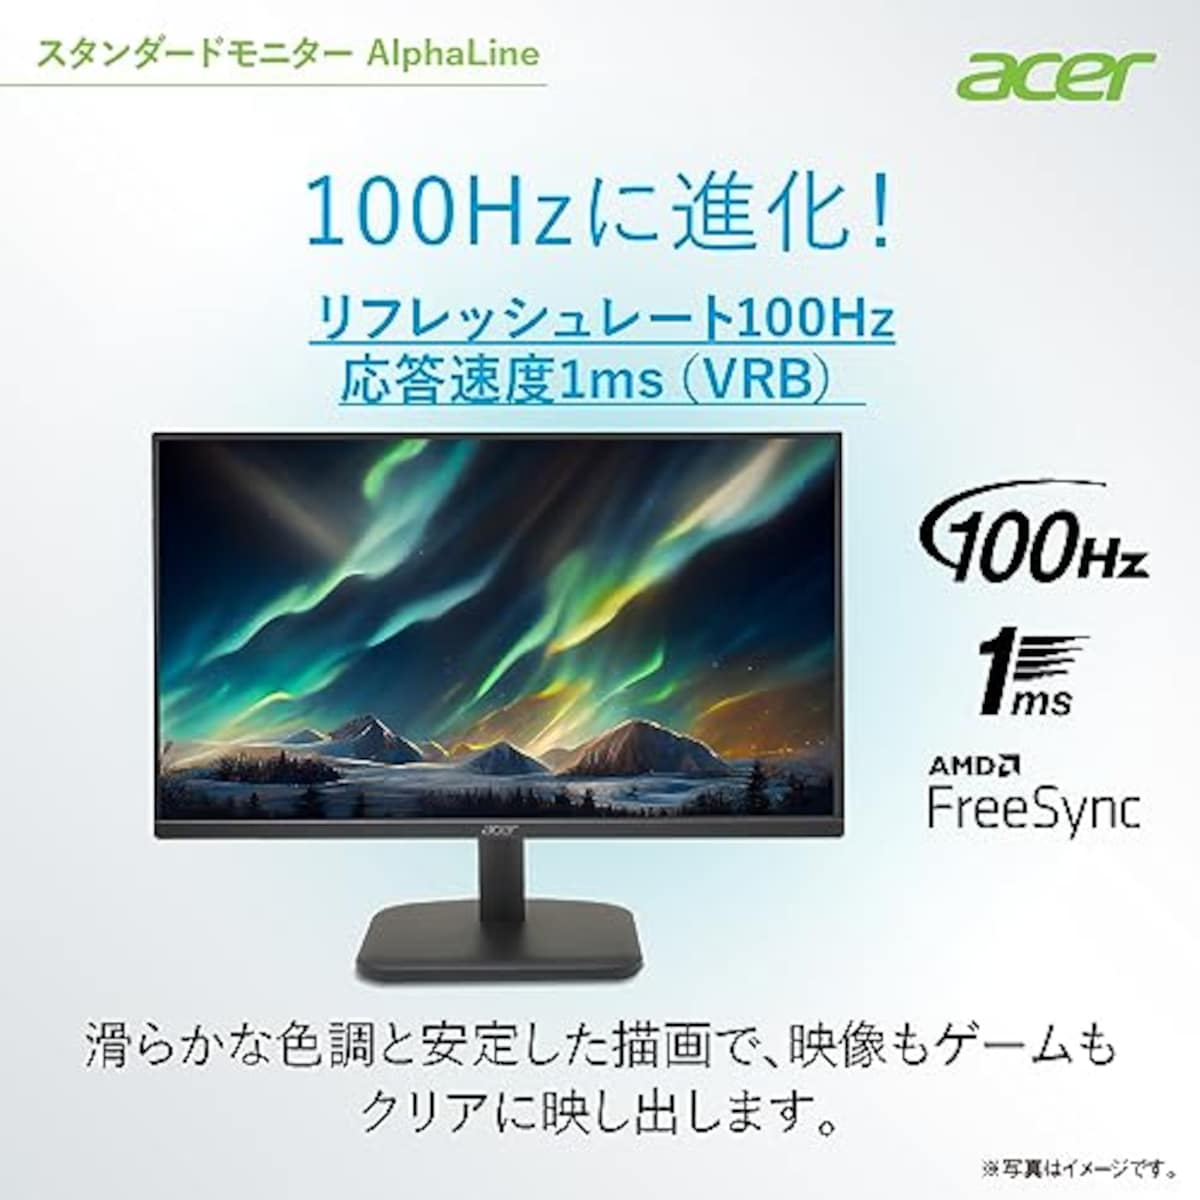  【Amazon.co.jp限定】日本エイサー Acer スタンダードモニター 27インチ IPS フルHD 100Hz 1ms スピーカー・ヘッドホン端子搭載 HDMI1.4 AMD FreeSync EK271Ebmix画像3 